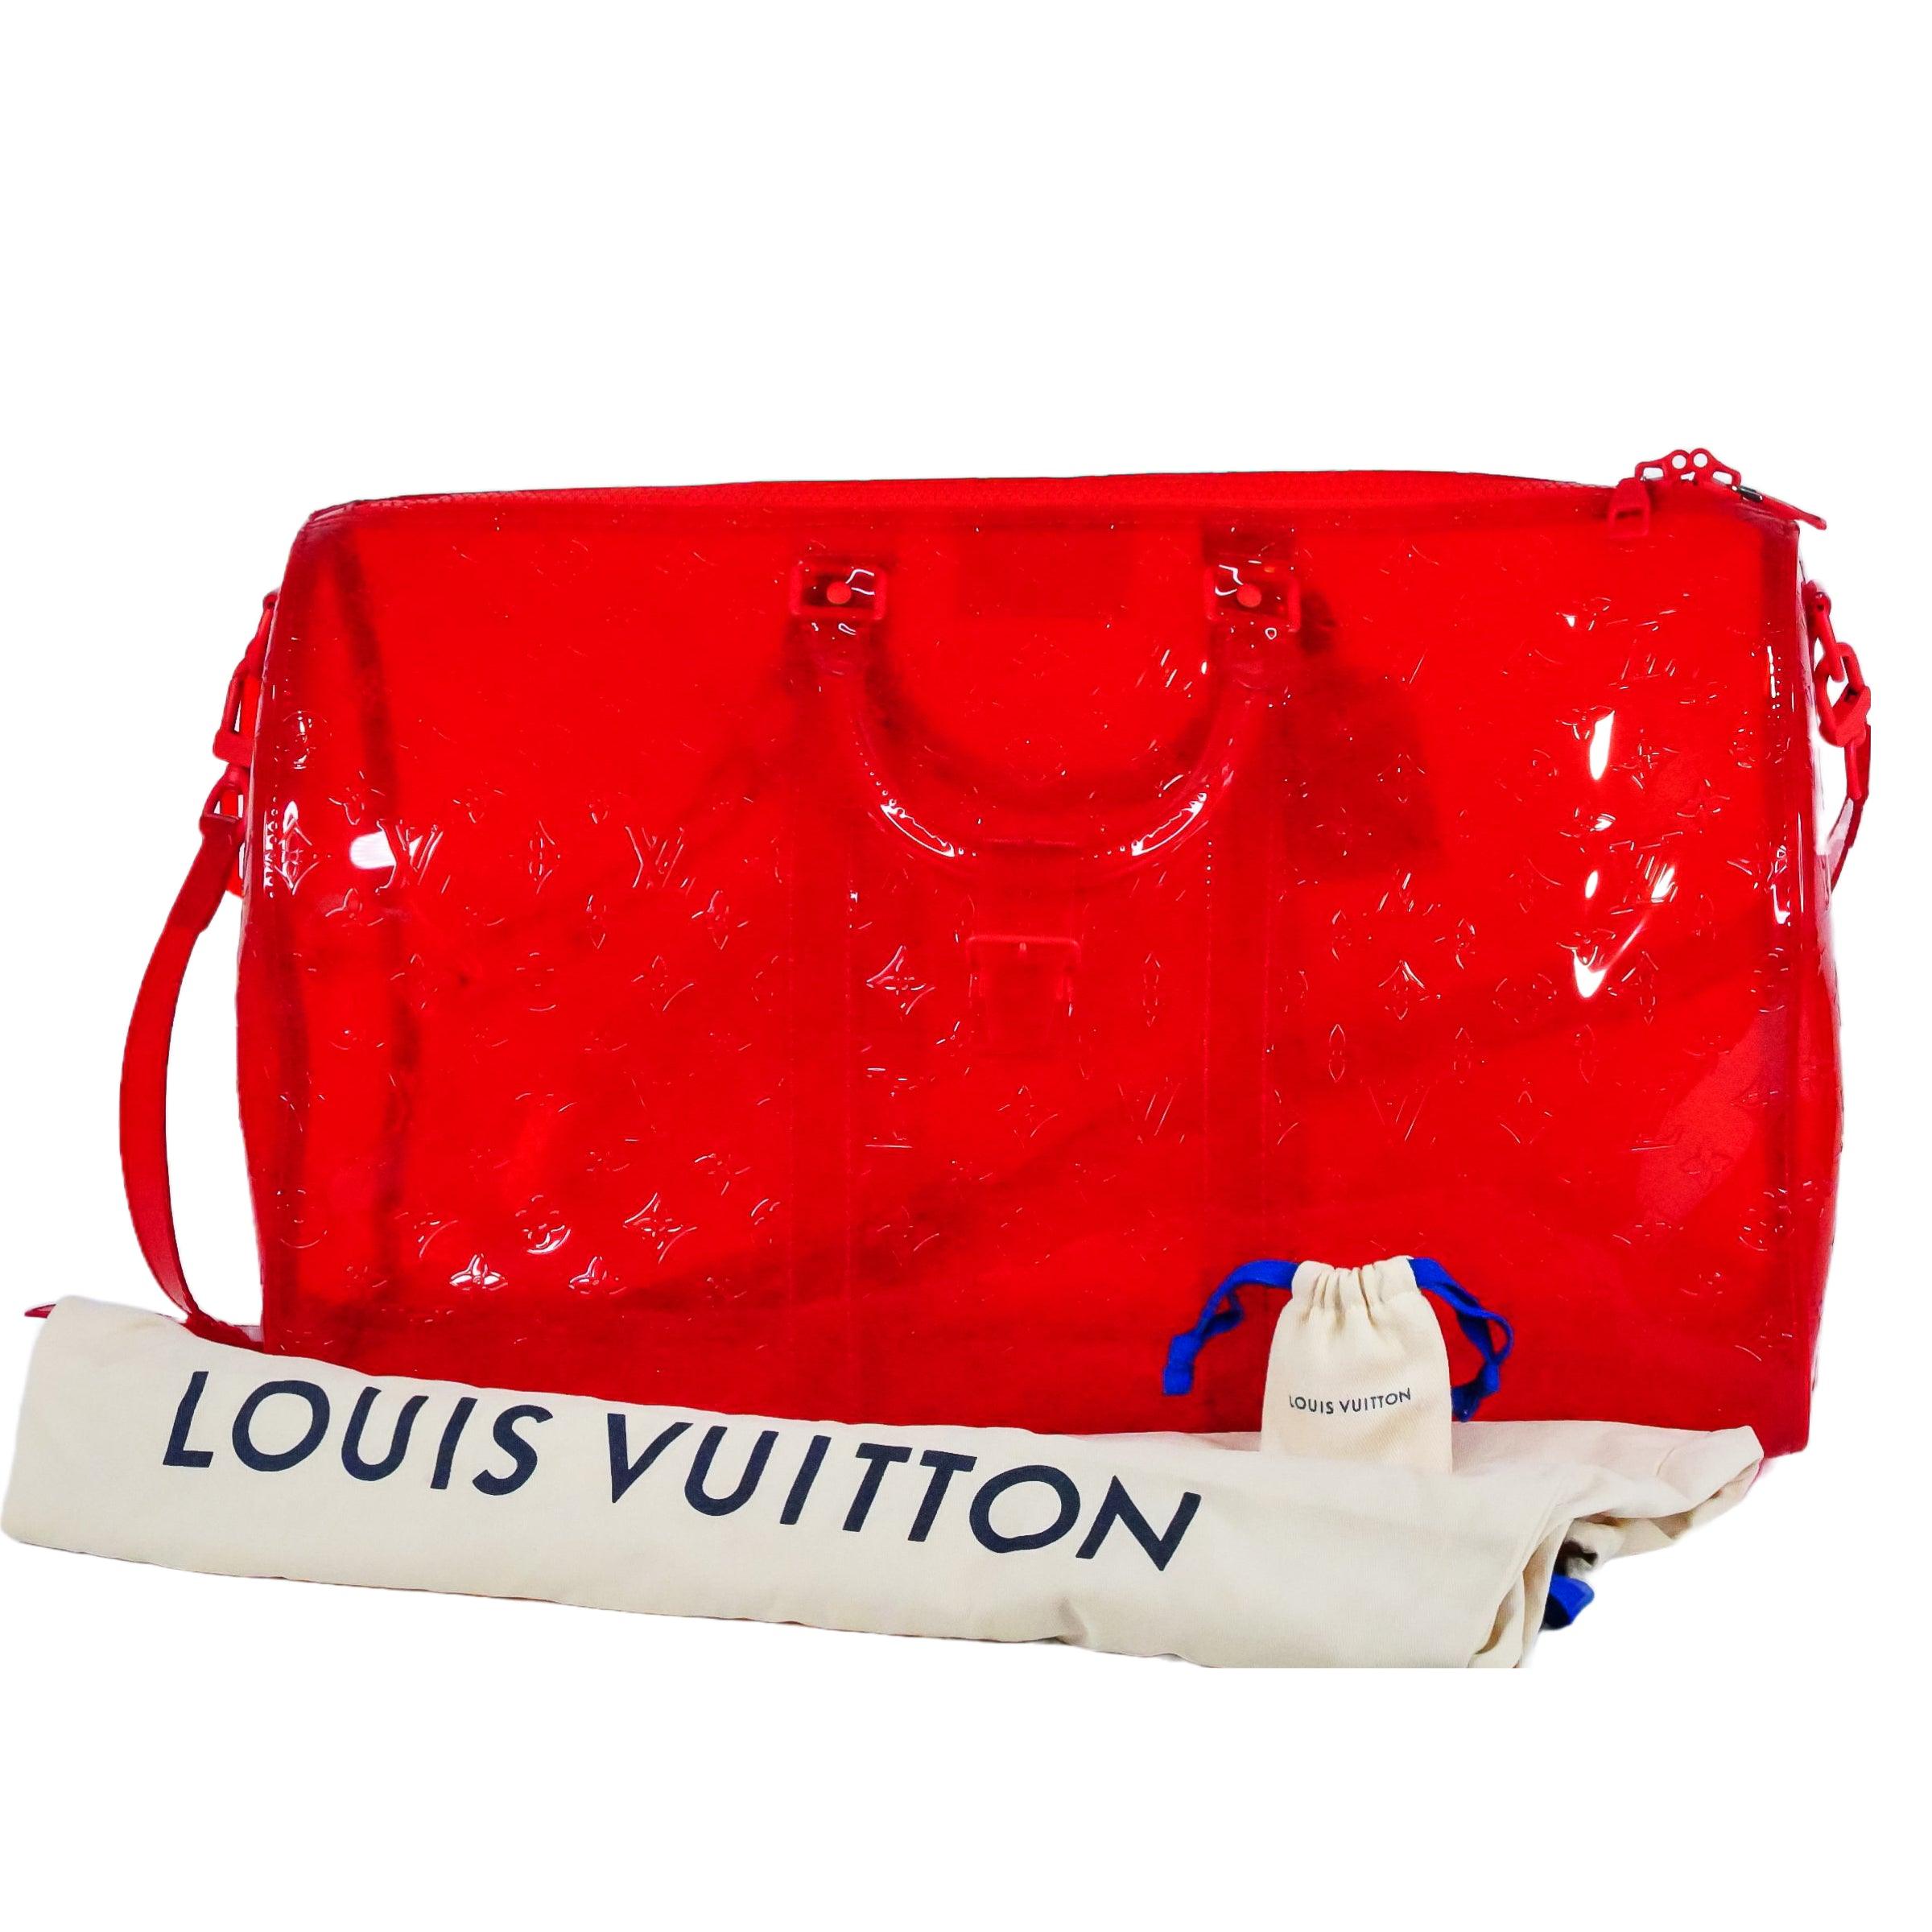 Virgil Abloh's Final Louis Vuitton Collection - The Vault